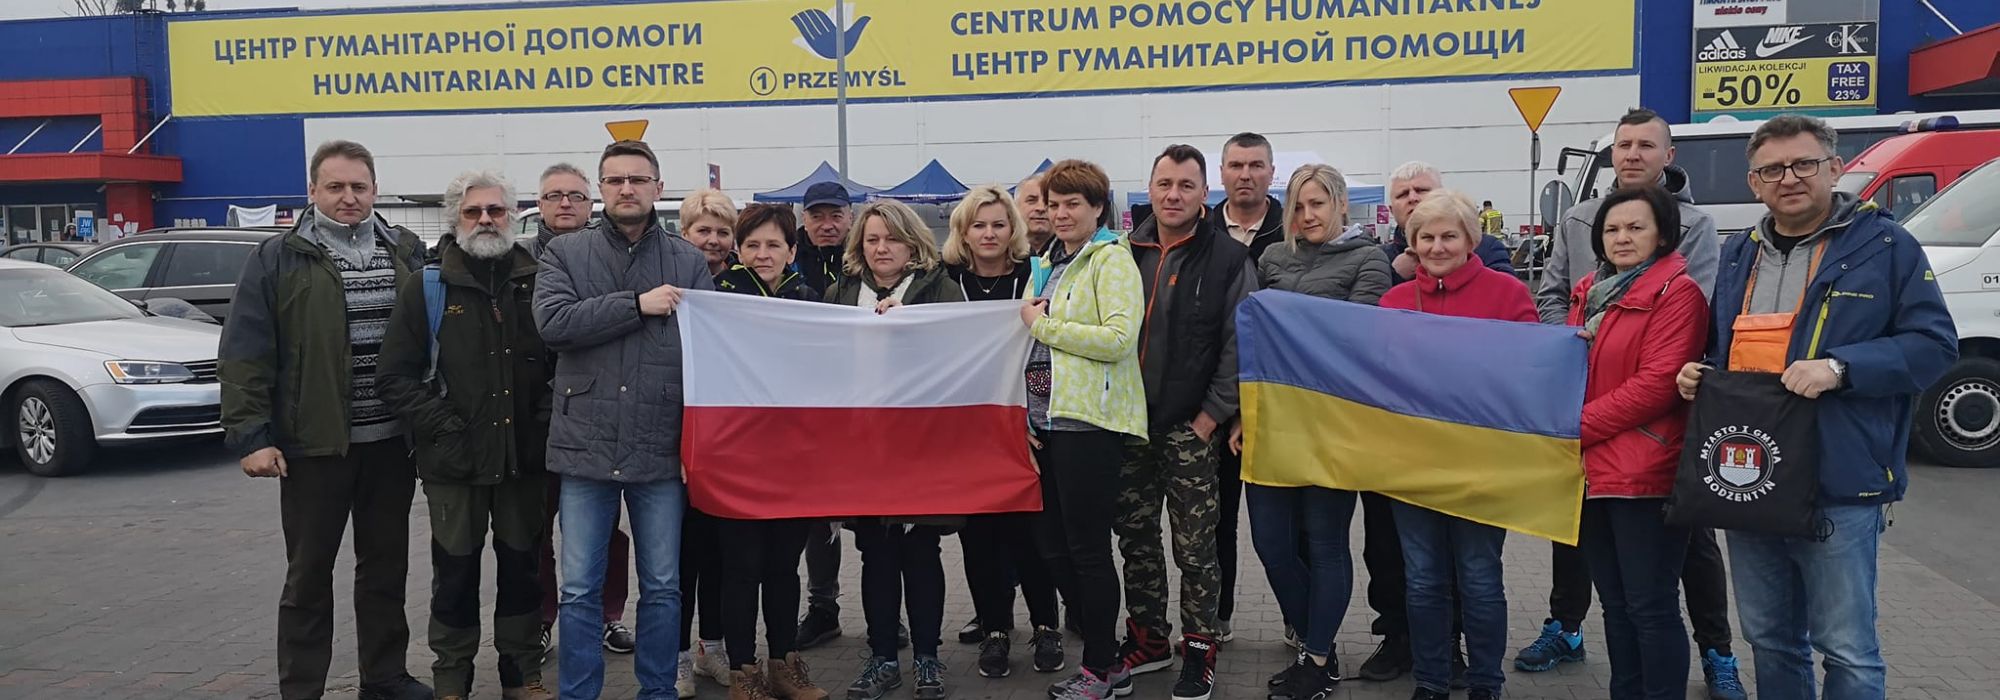 20 osobowa delegacja z Miasta i Gminy Bodzentyn w Przemyślu pomagała uchodźcom